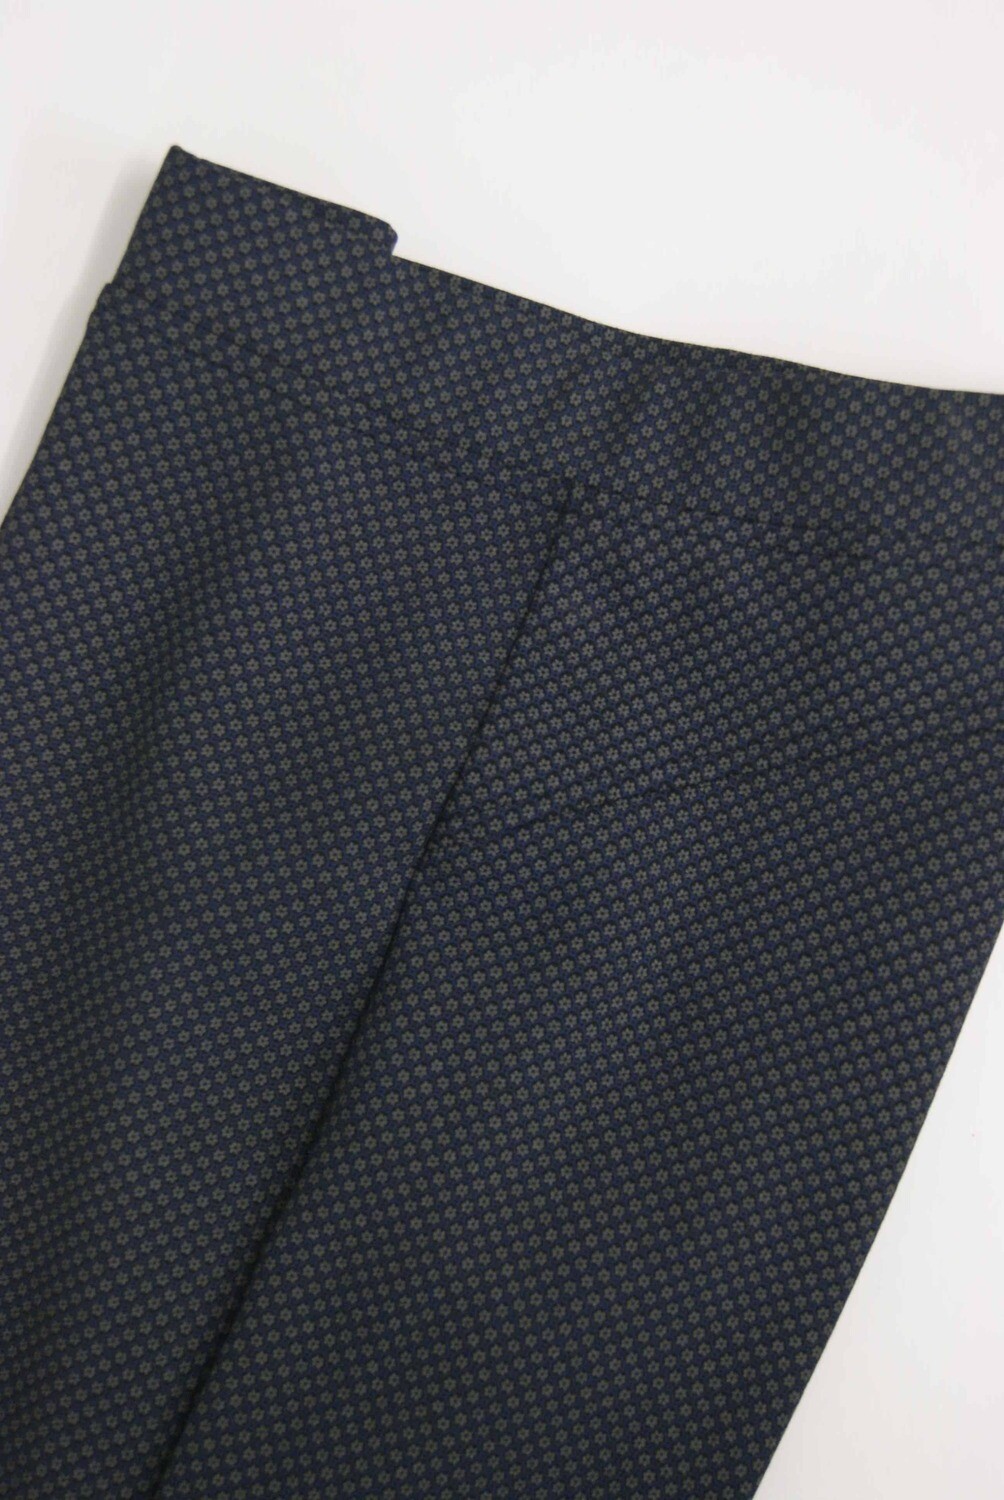 Diversa Lange broek: elastiek in de lenden ( Blauw met motiefje)